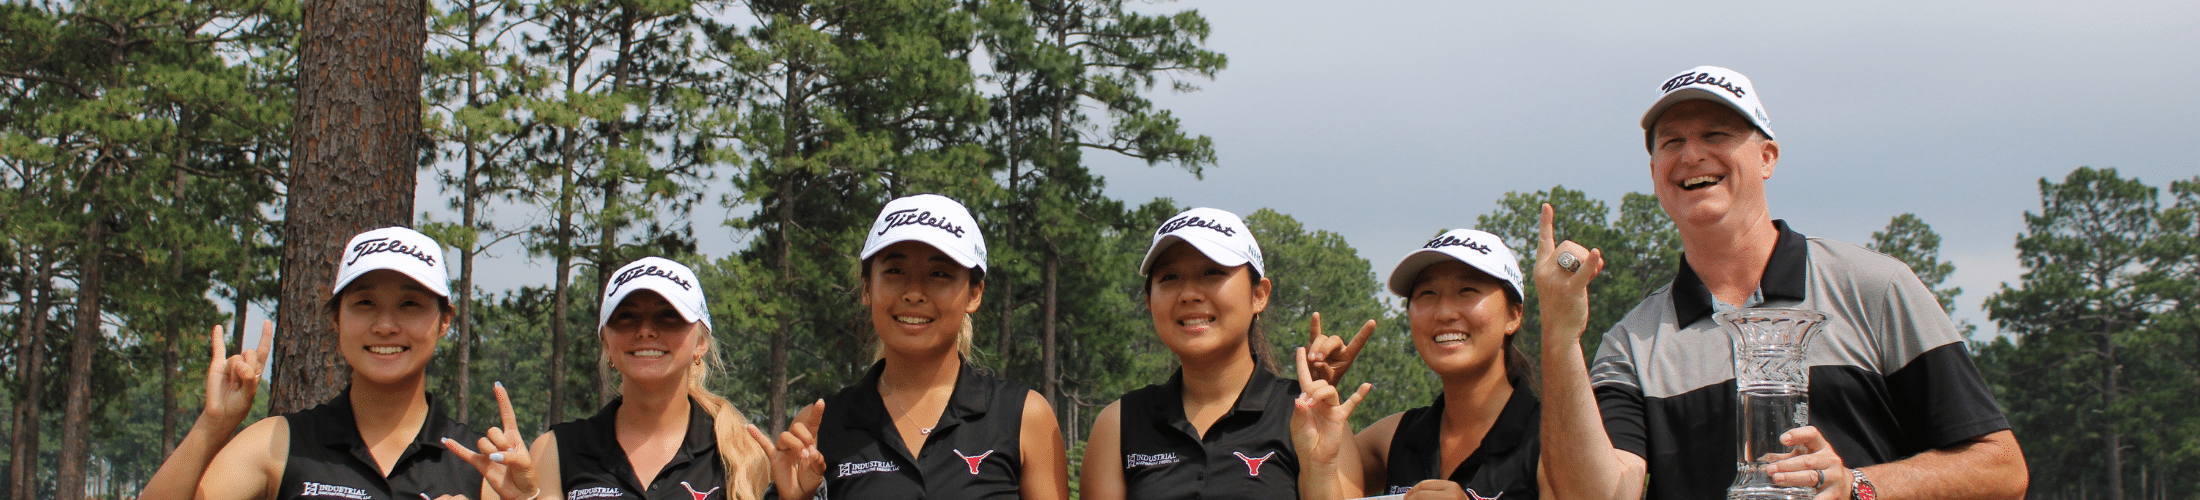 Girls High School Golf in Texas